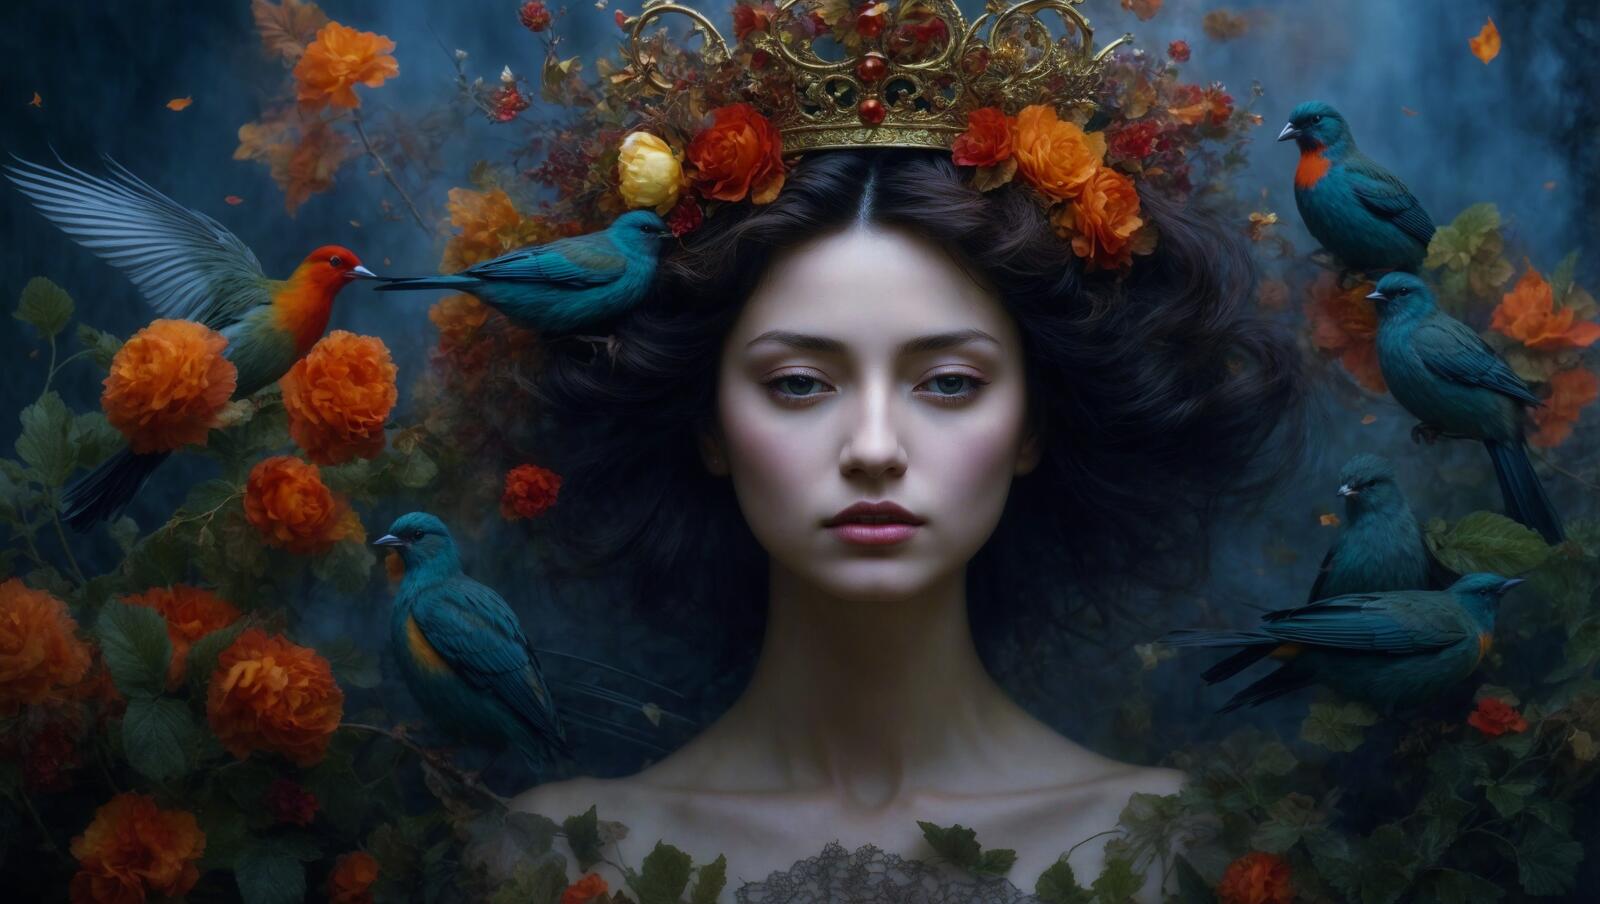 Бесплатное фото Картина с изображением девушки с птицами на голове